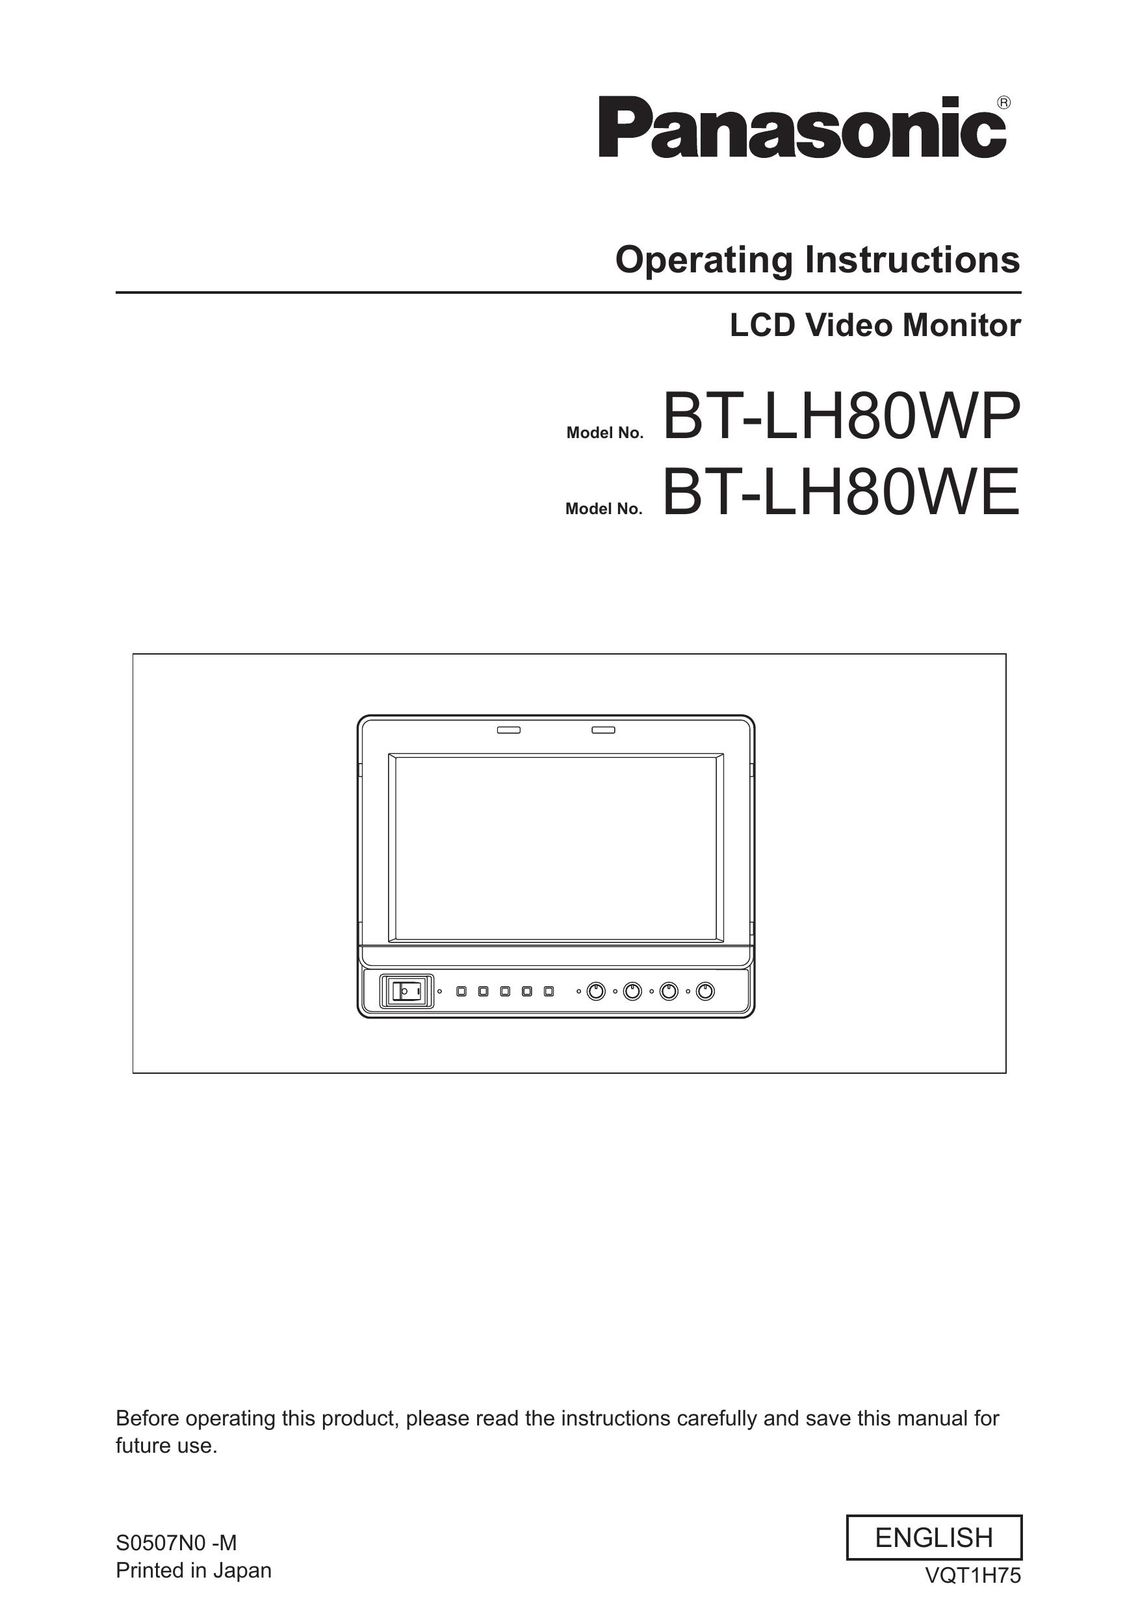 Panasonic BT-LH80WP Computer Monitor User Manual